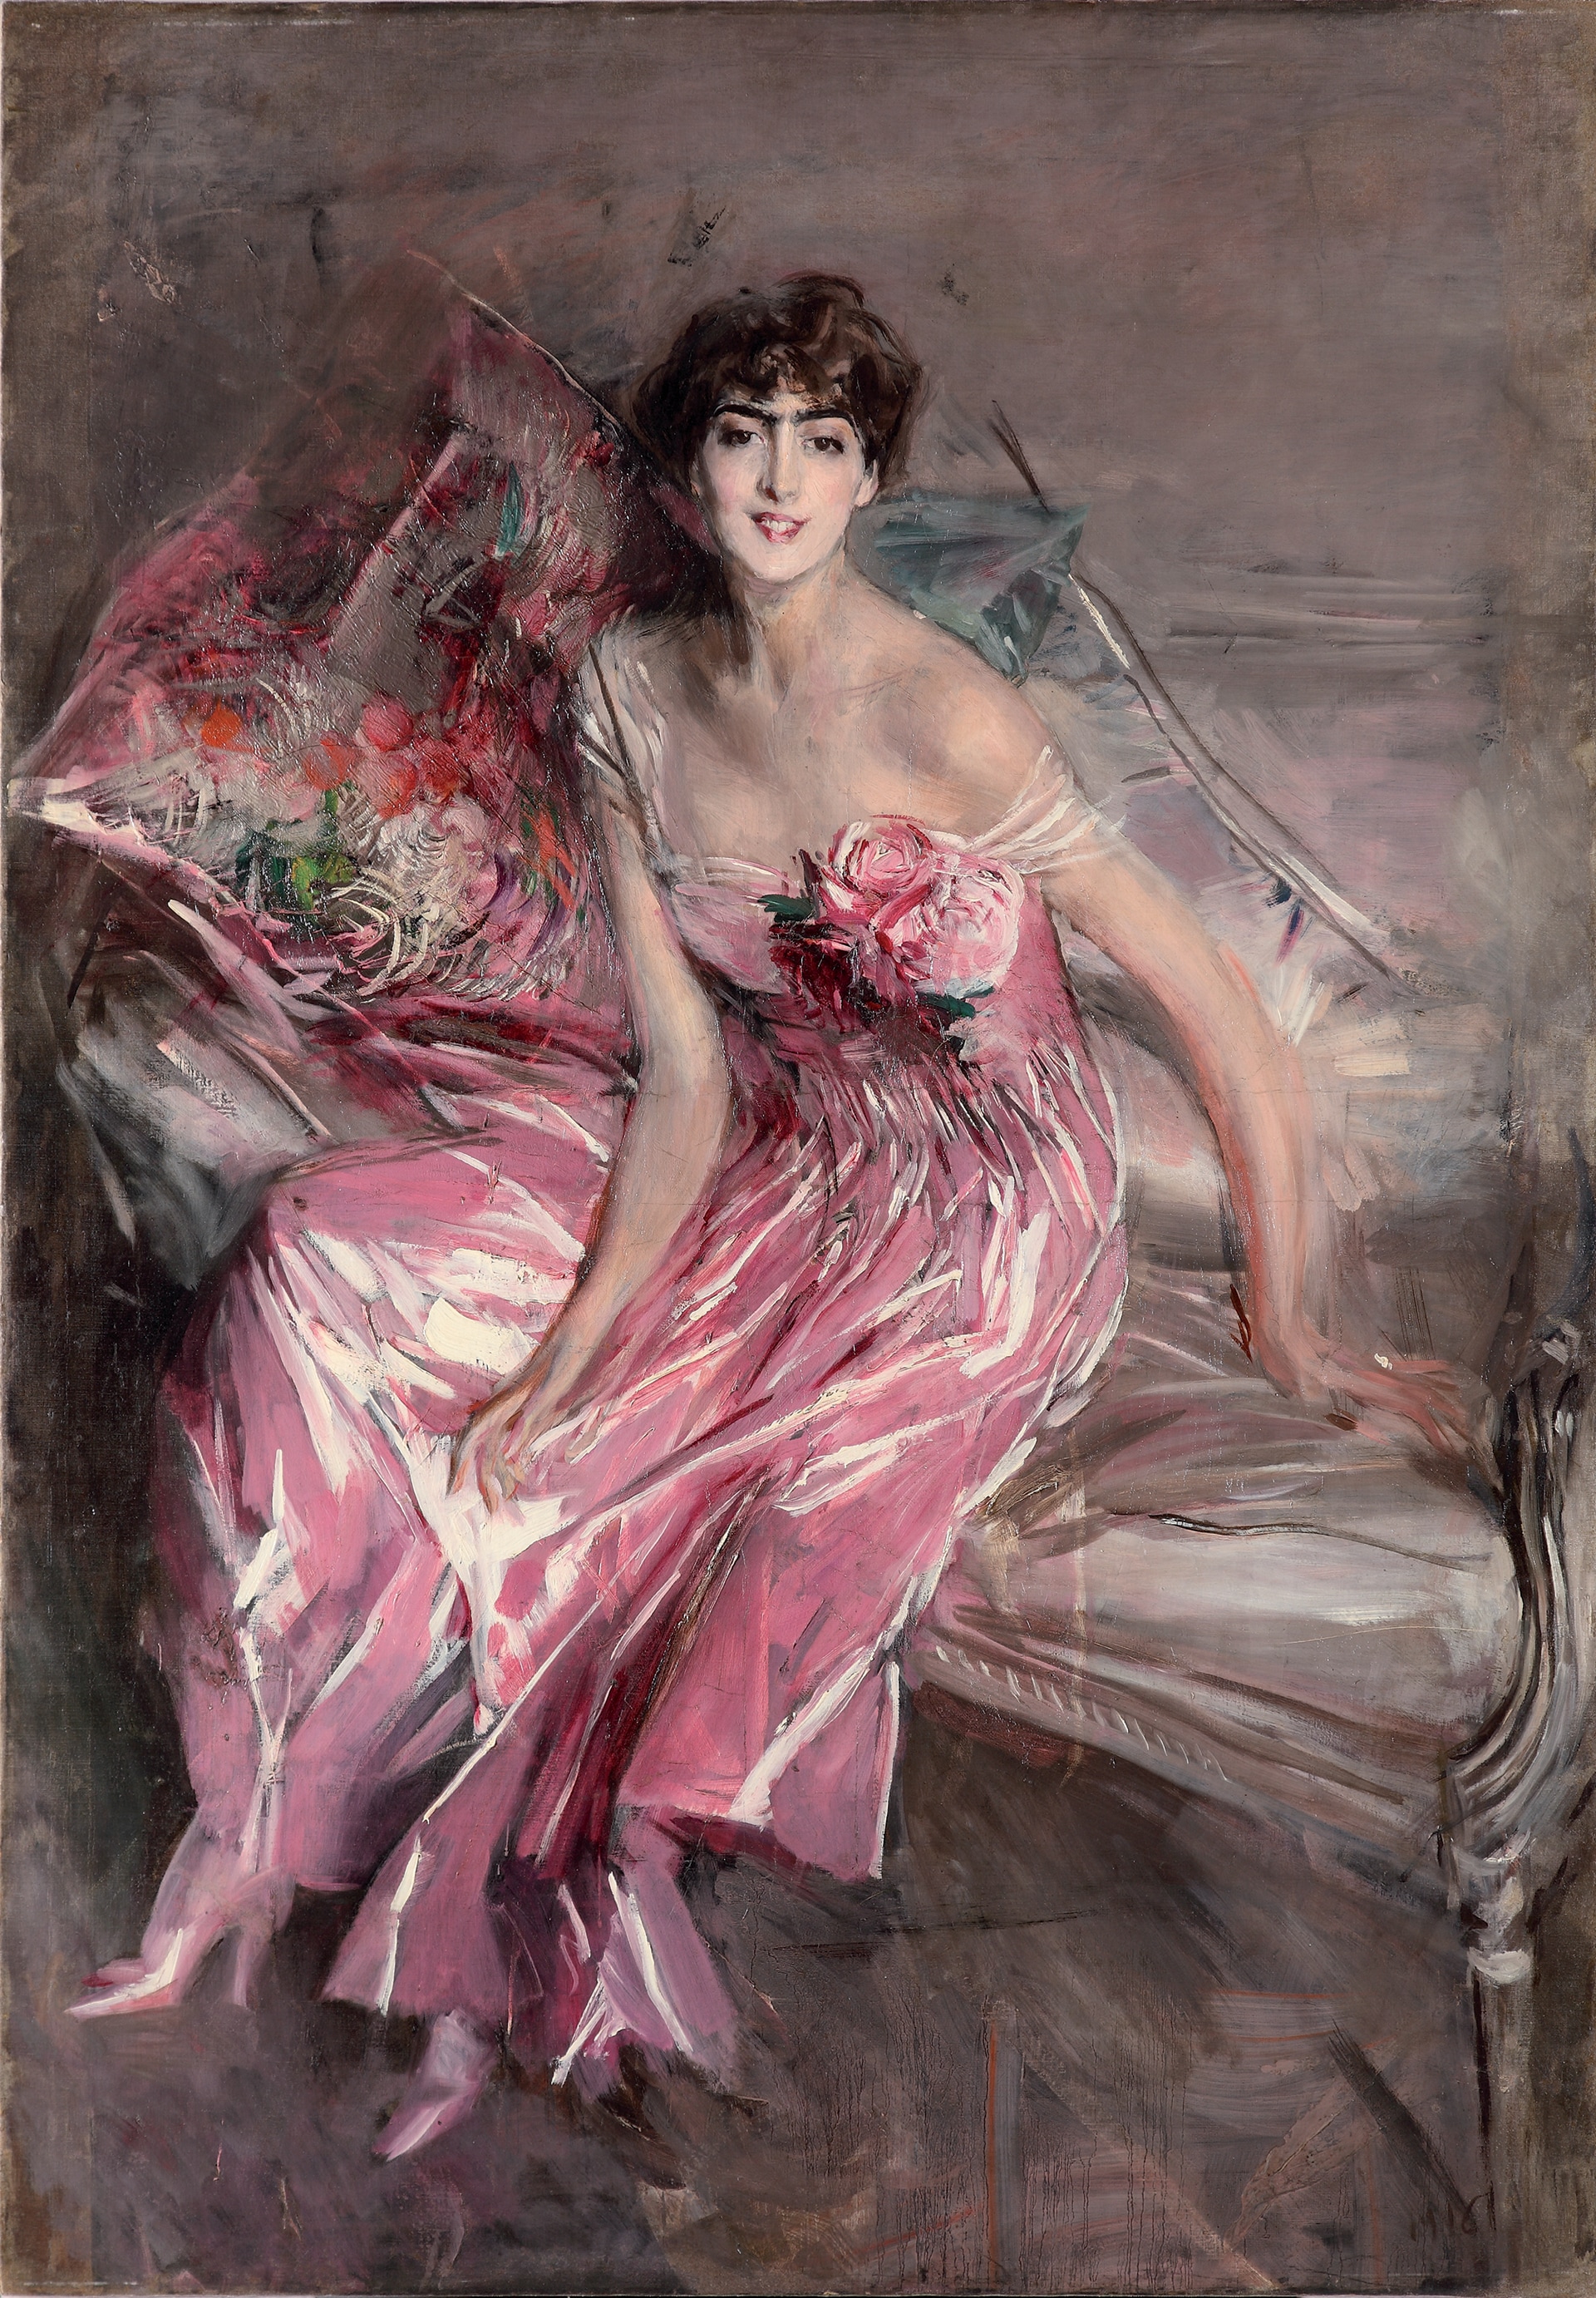 Giovanni Boldini "La signora in rosa", 1916. Olio su tela, 163 x 113 cm. Museo Giovanni Boldini, Ferrara